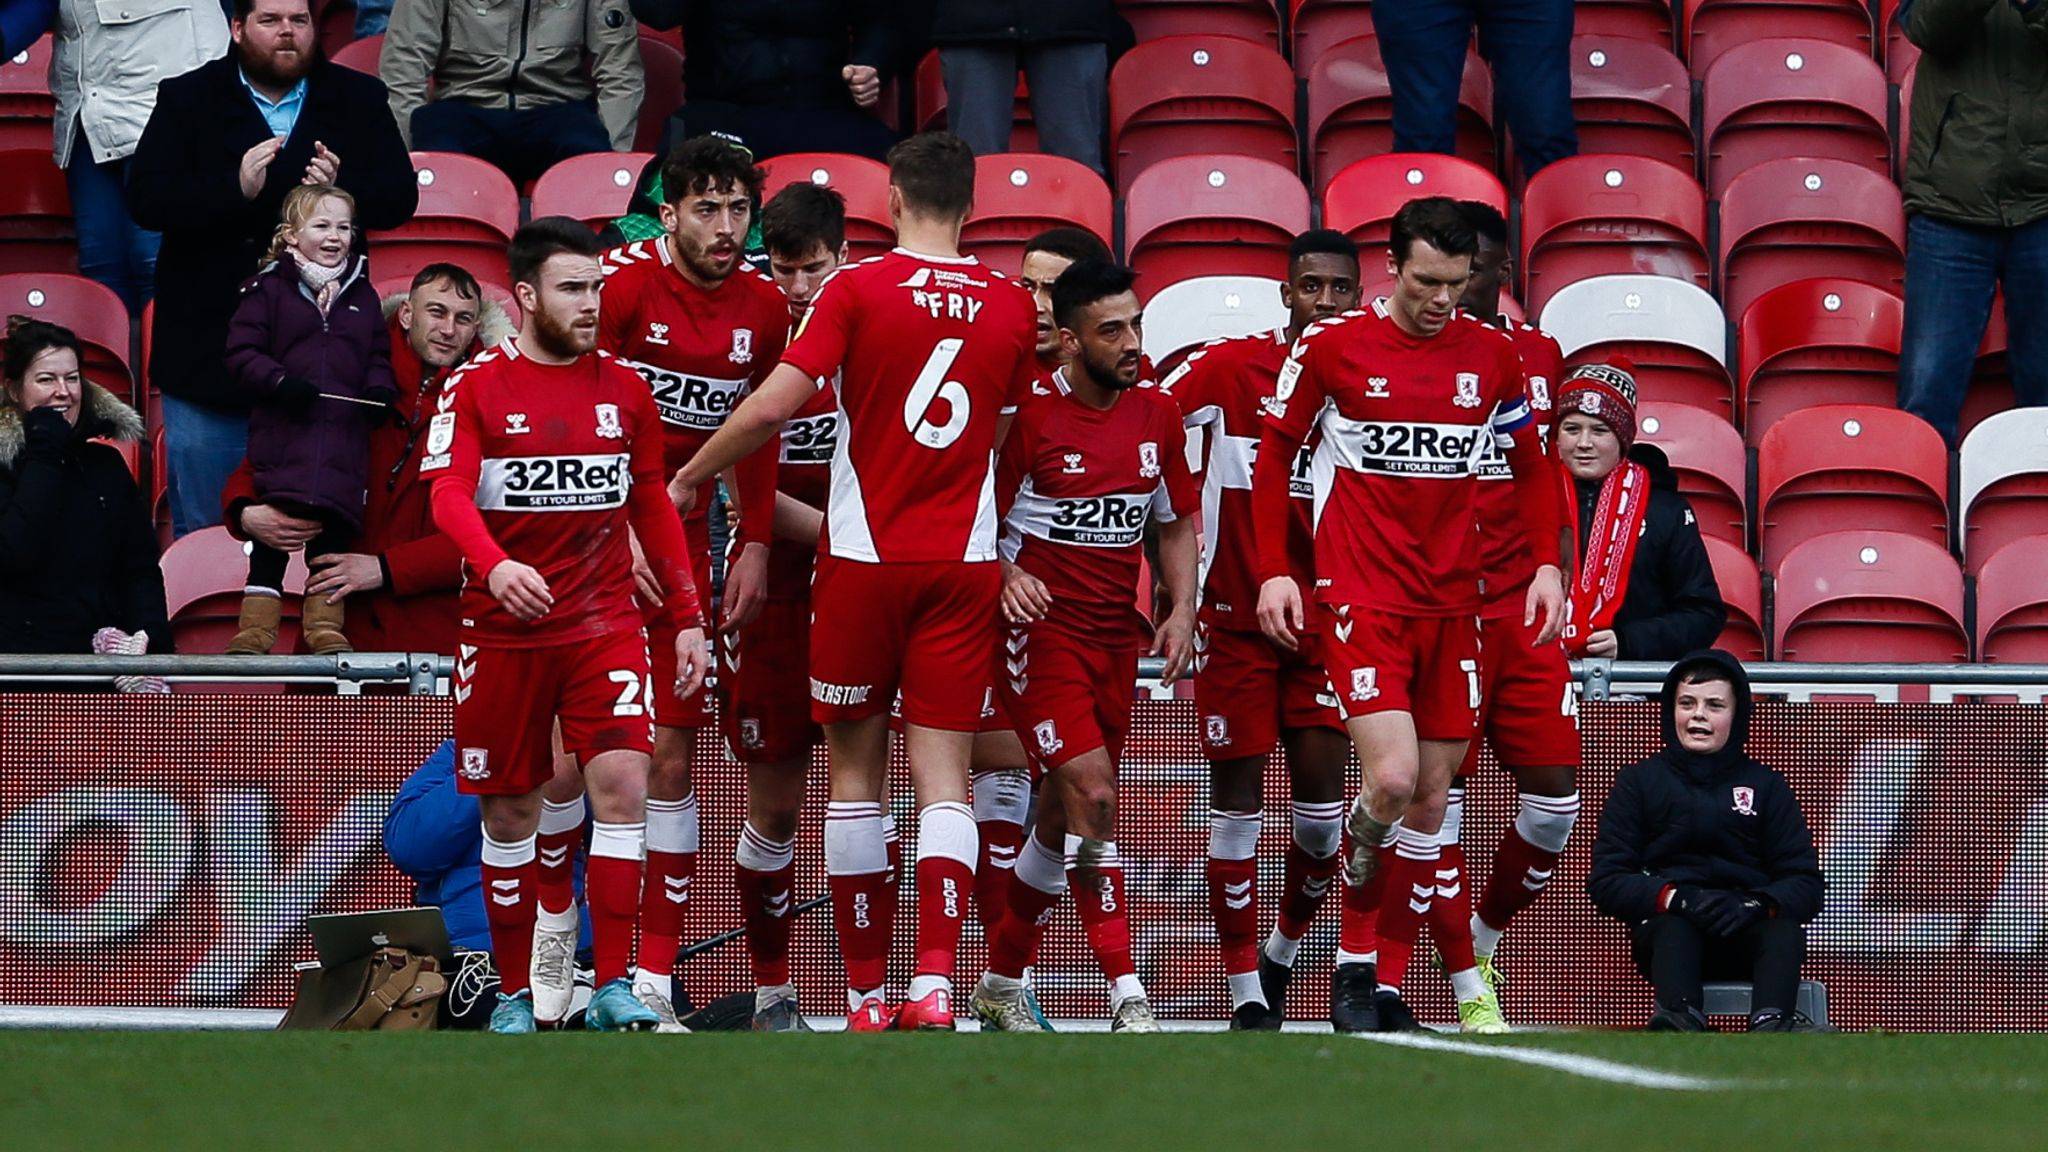 Middlesbrough hiện đang trải qua một giai đoạn khó khăn, với việc họ chỉ giành được một chiến thắng trong bốn trận gần nhất trên mọi mặt trận.